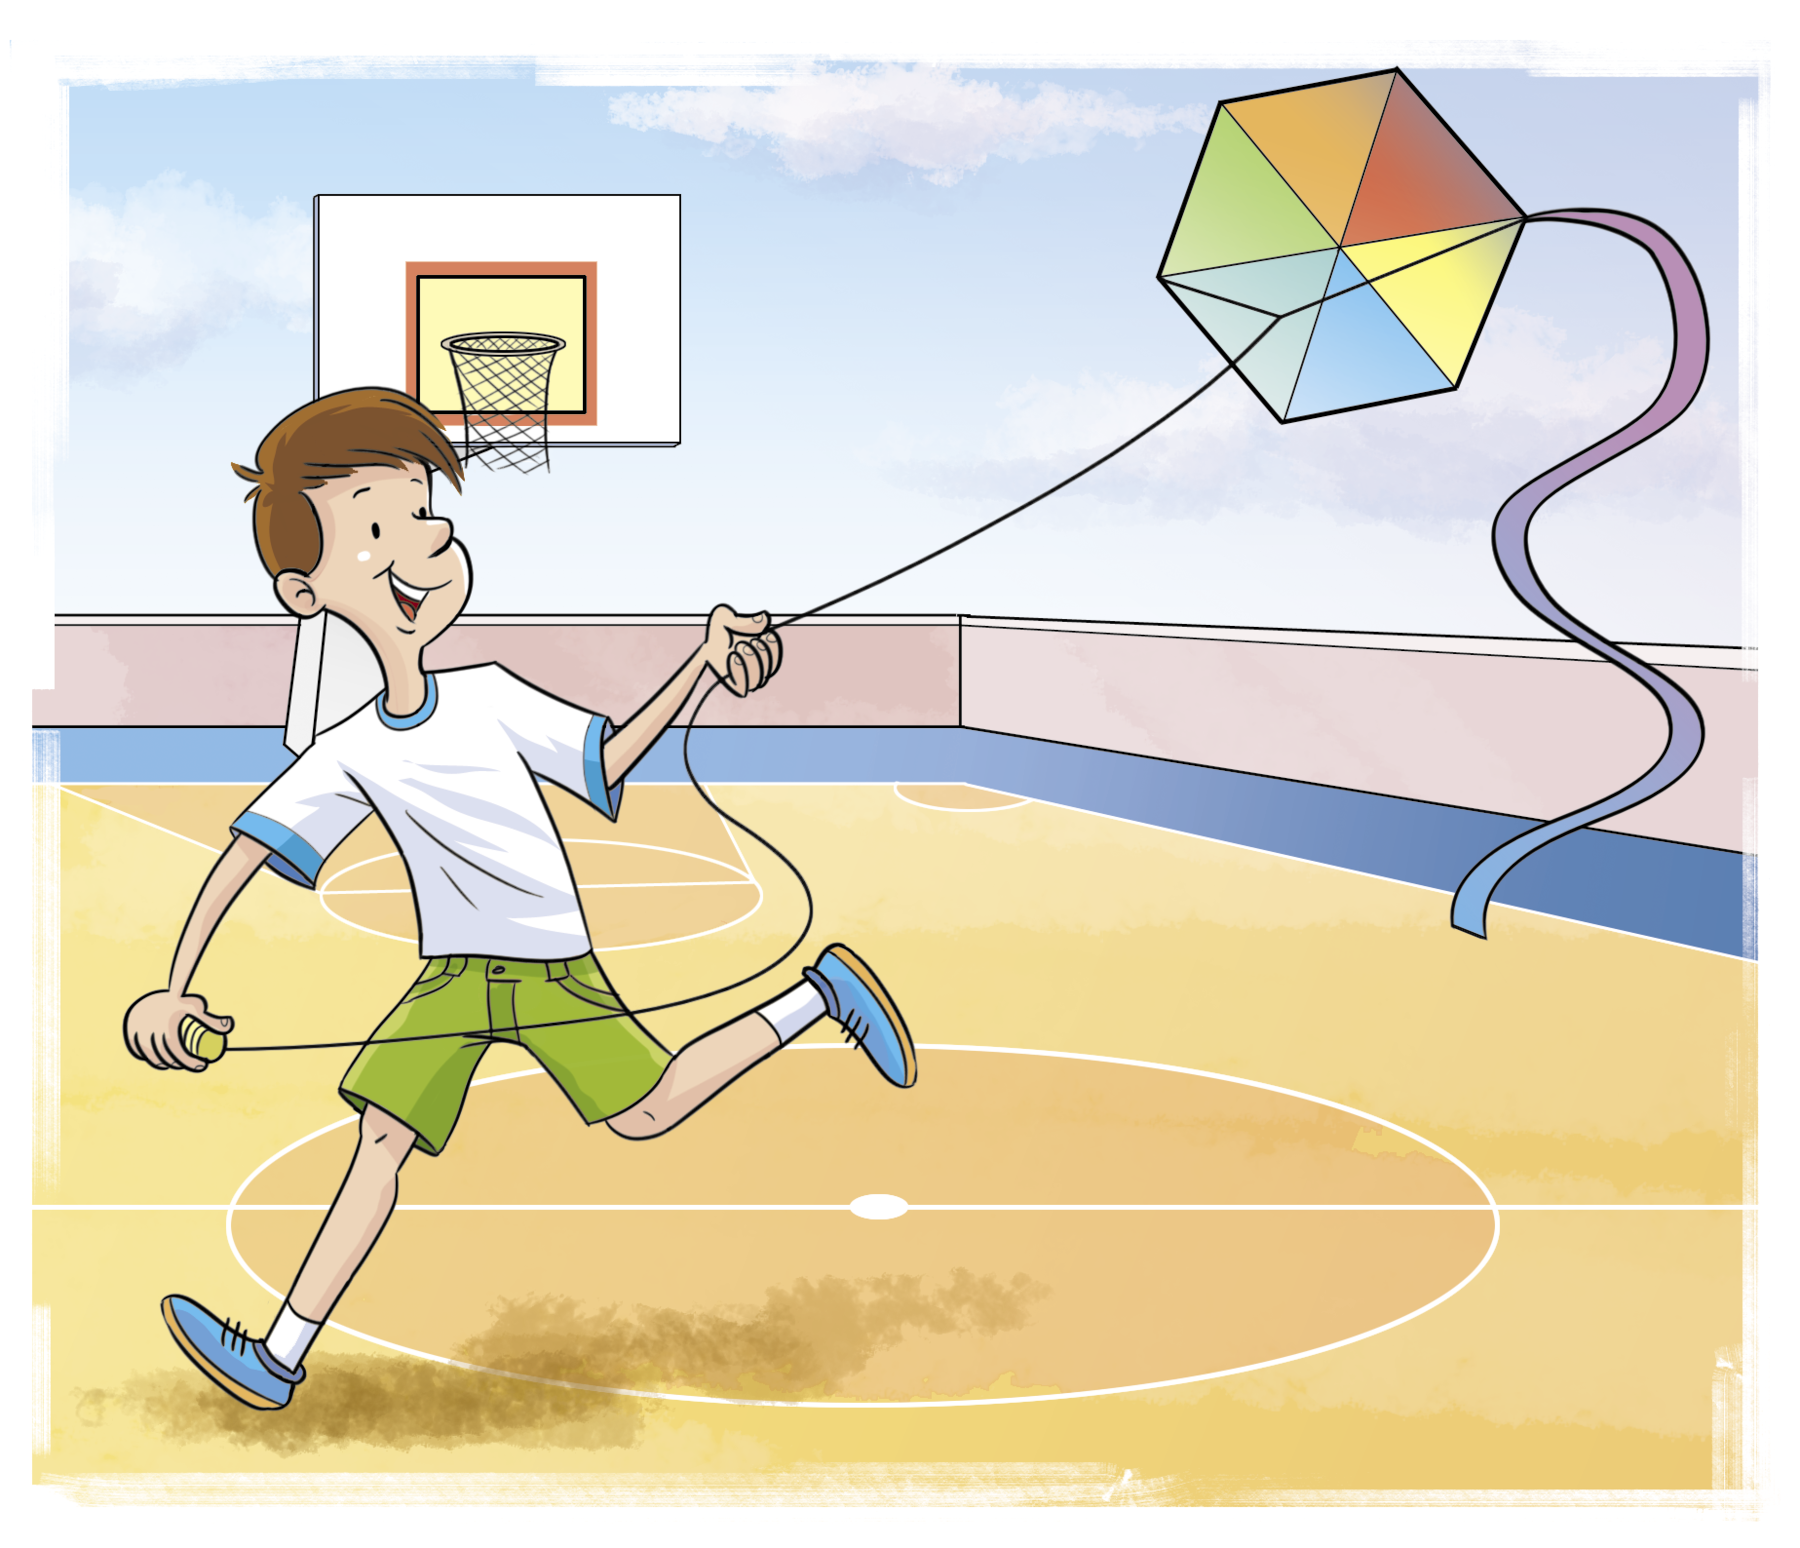 Ilustração. Menino branco, sorrindo, de cabelo castanho, camiseta branca e bermuda verde está correndo com uma pipa hexagonal colorida em uma quadra de basquete. Ao fundo, cesta de basquete.